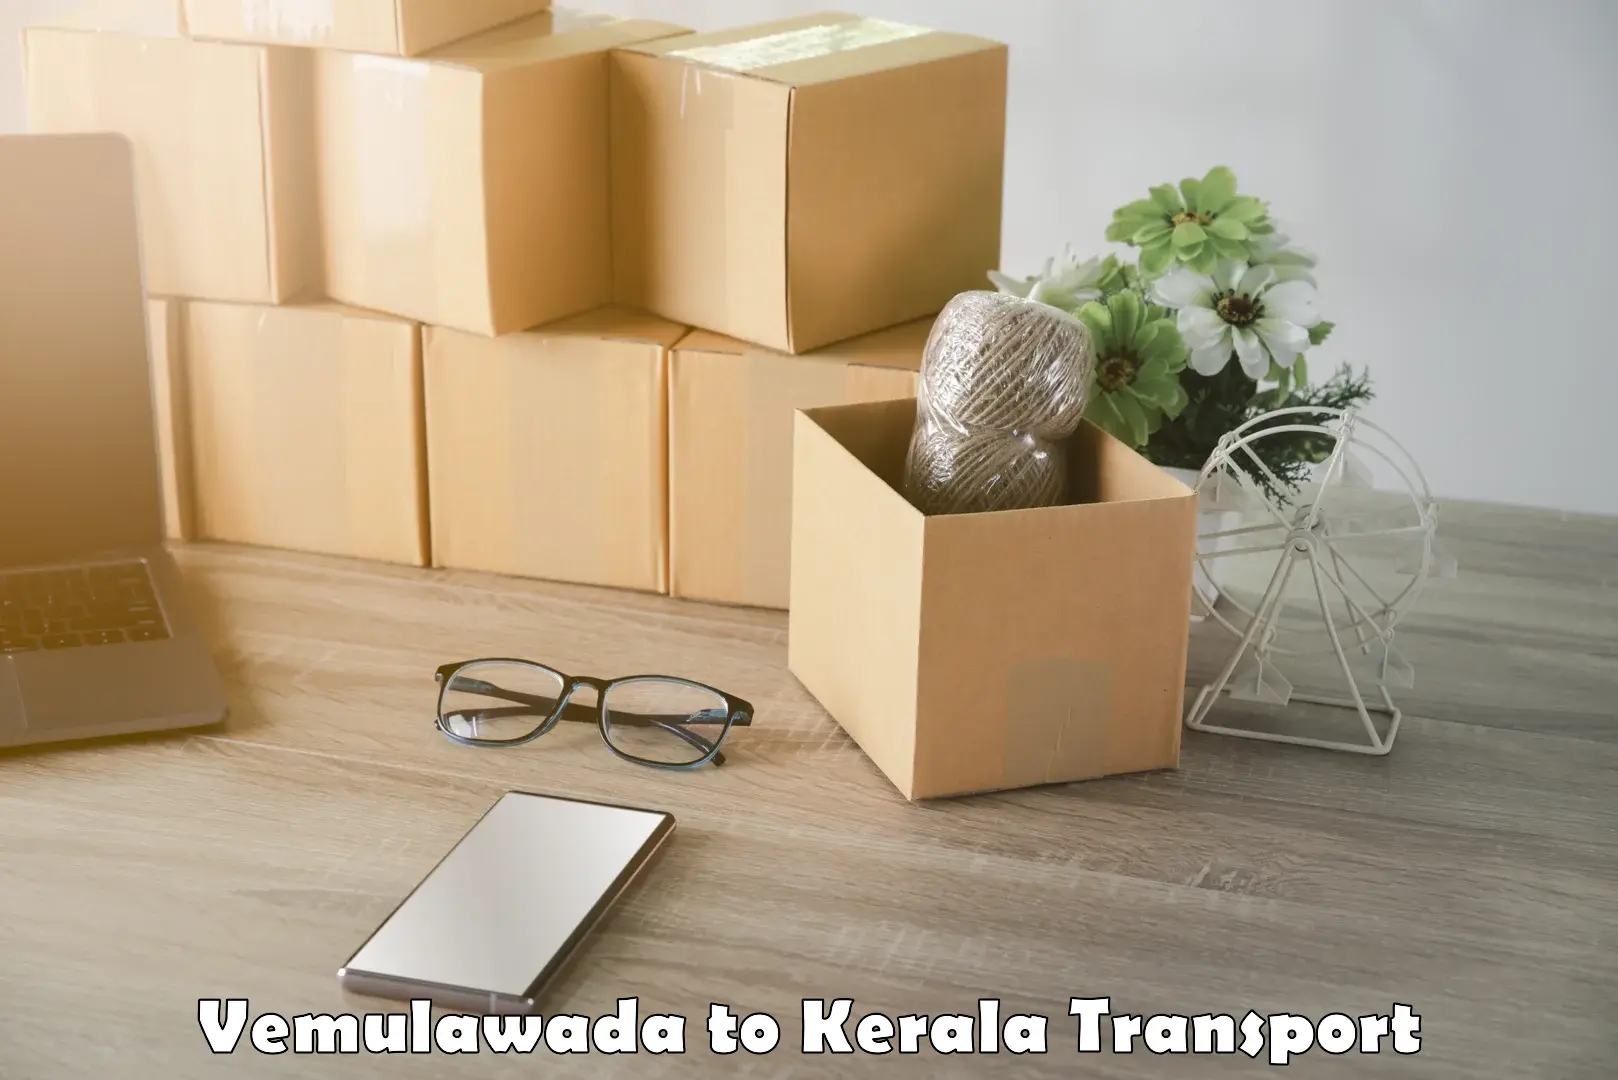 Shipping services Vemulawada to Pandikkad